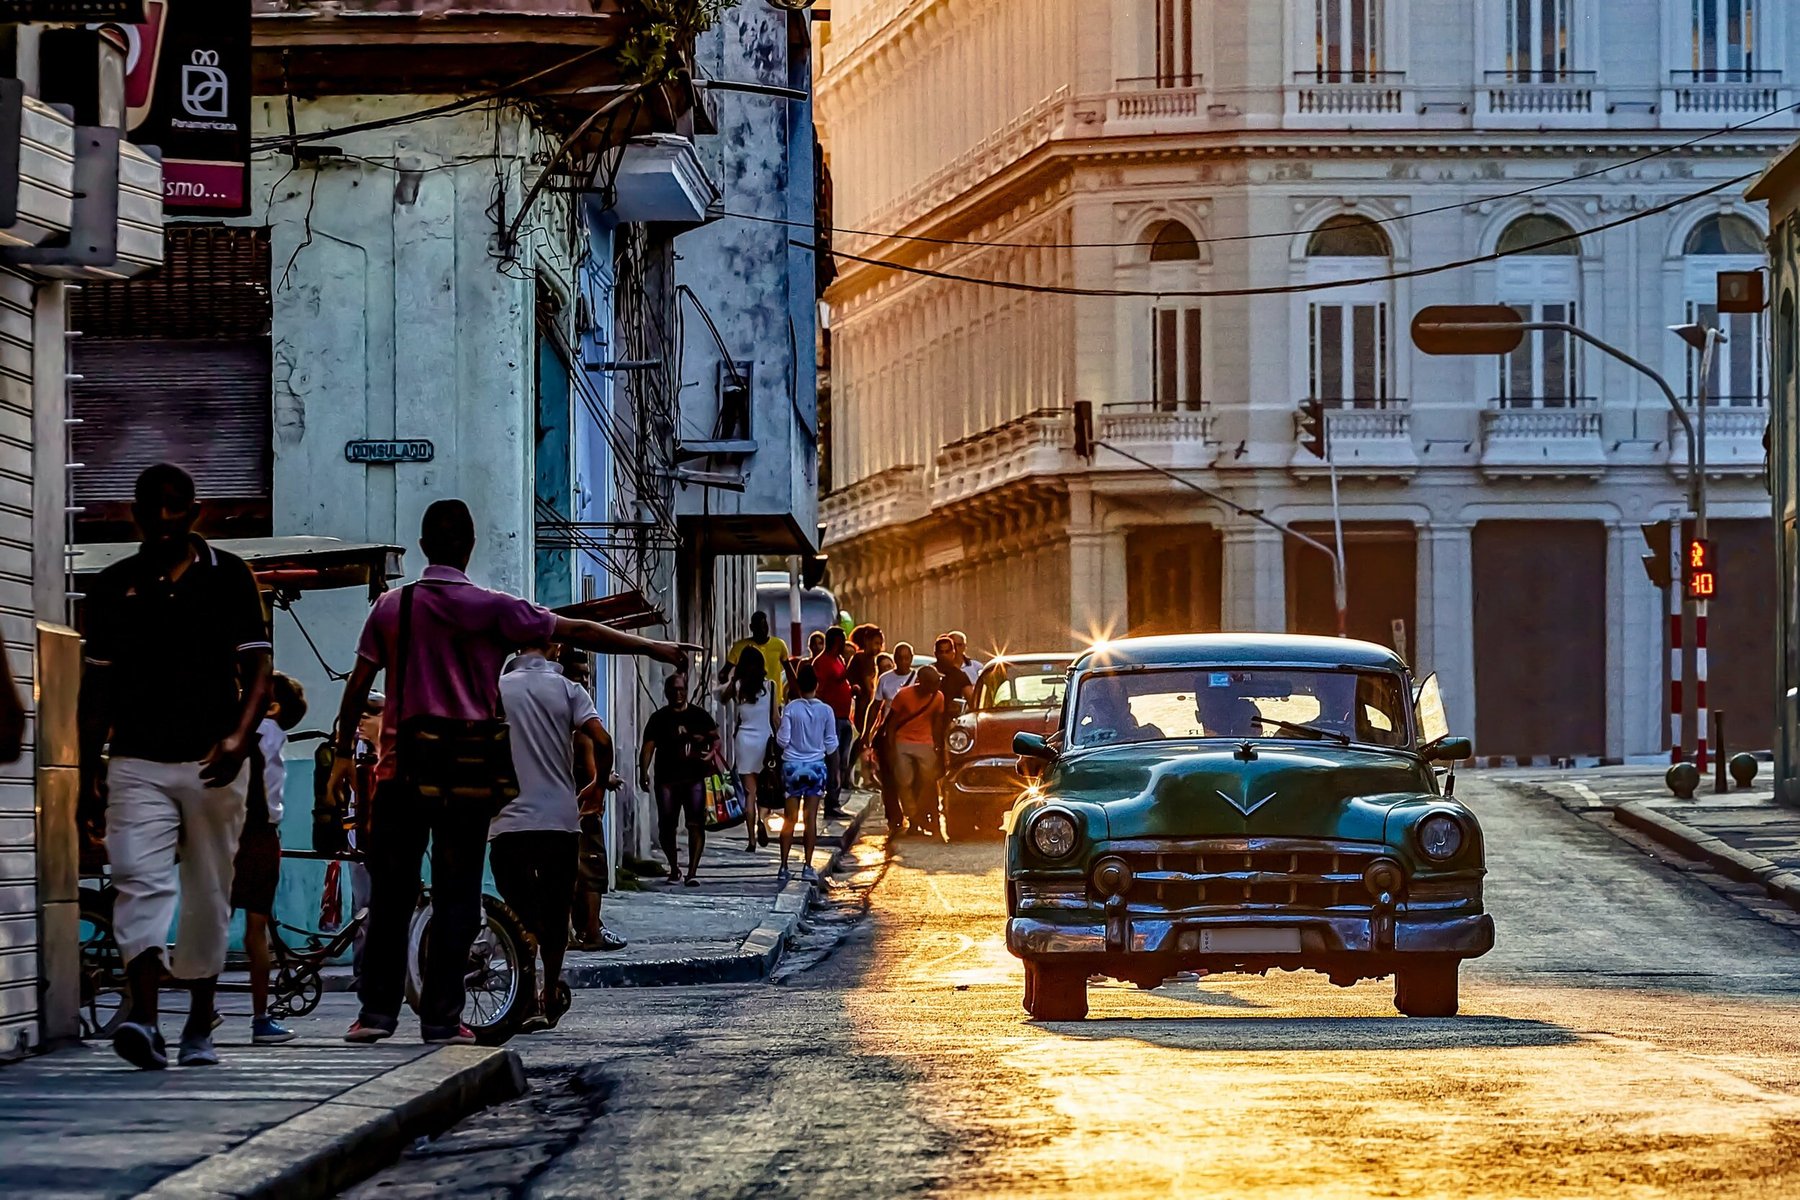 Cuba Cultural Journey